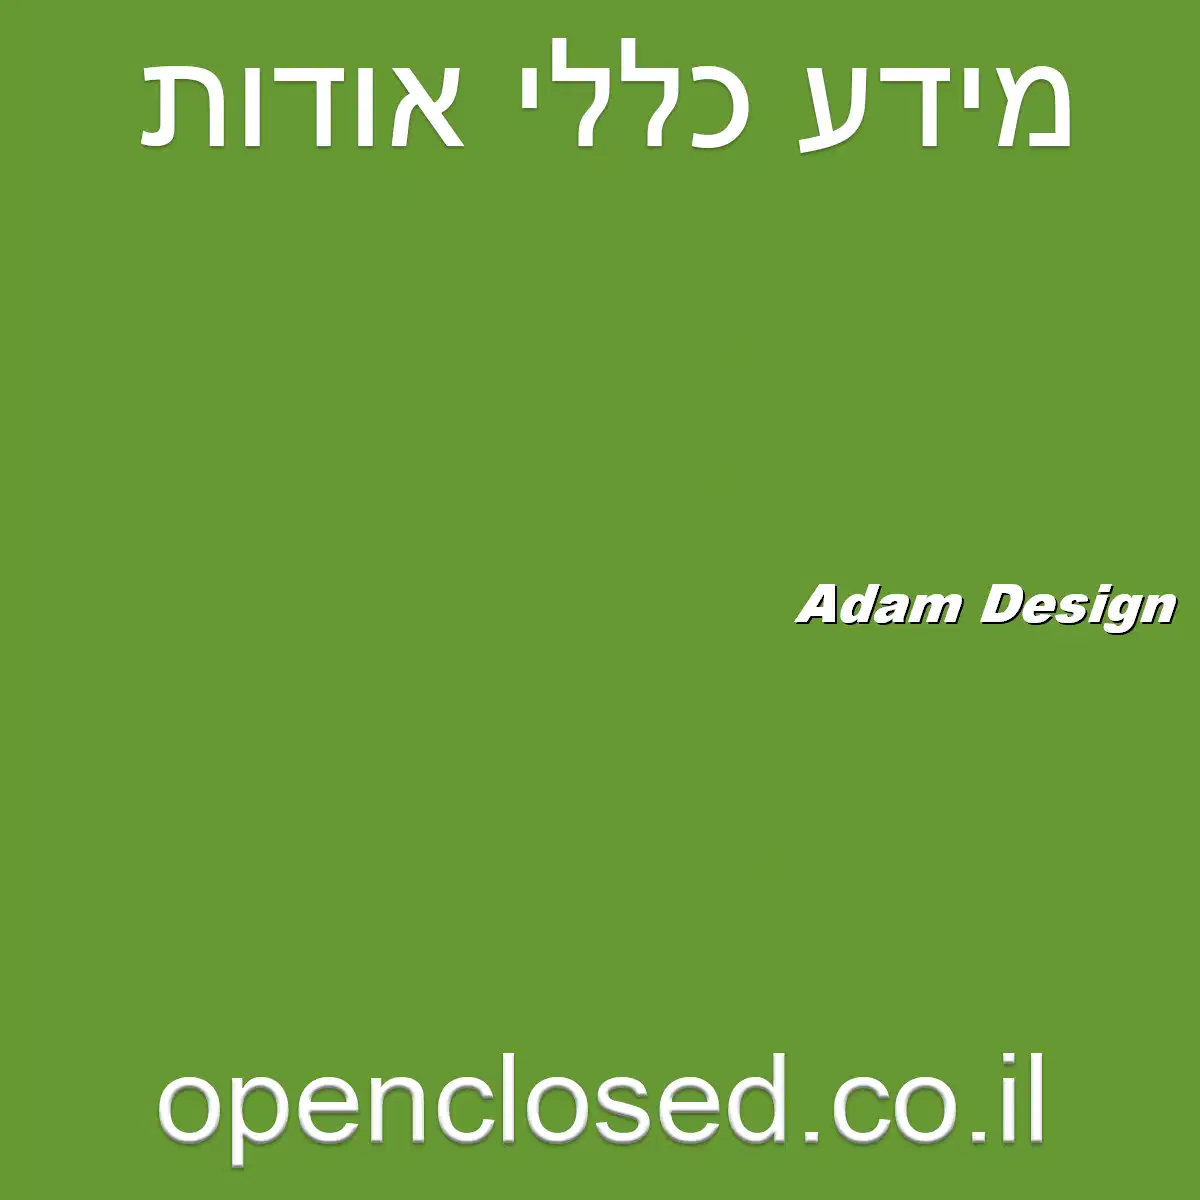 Adam Design